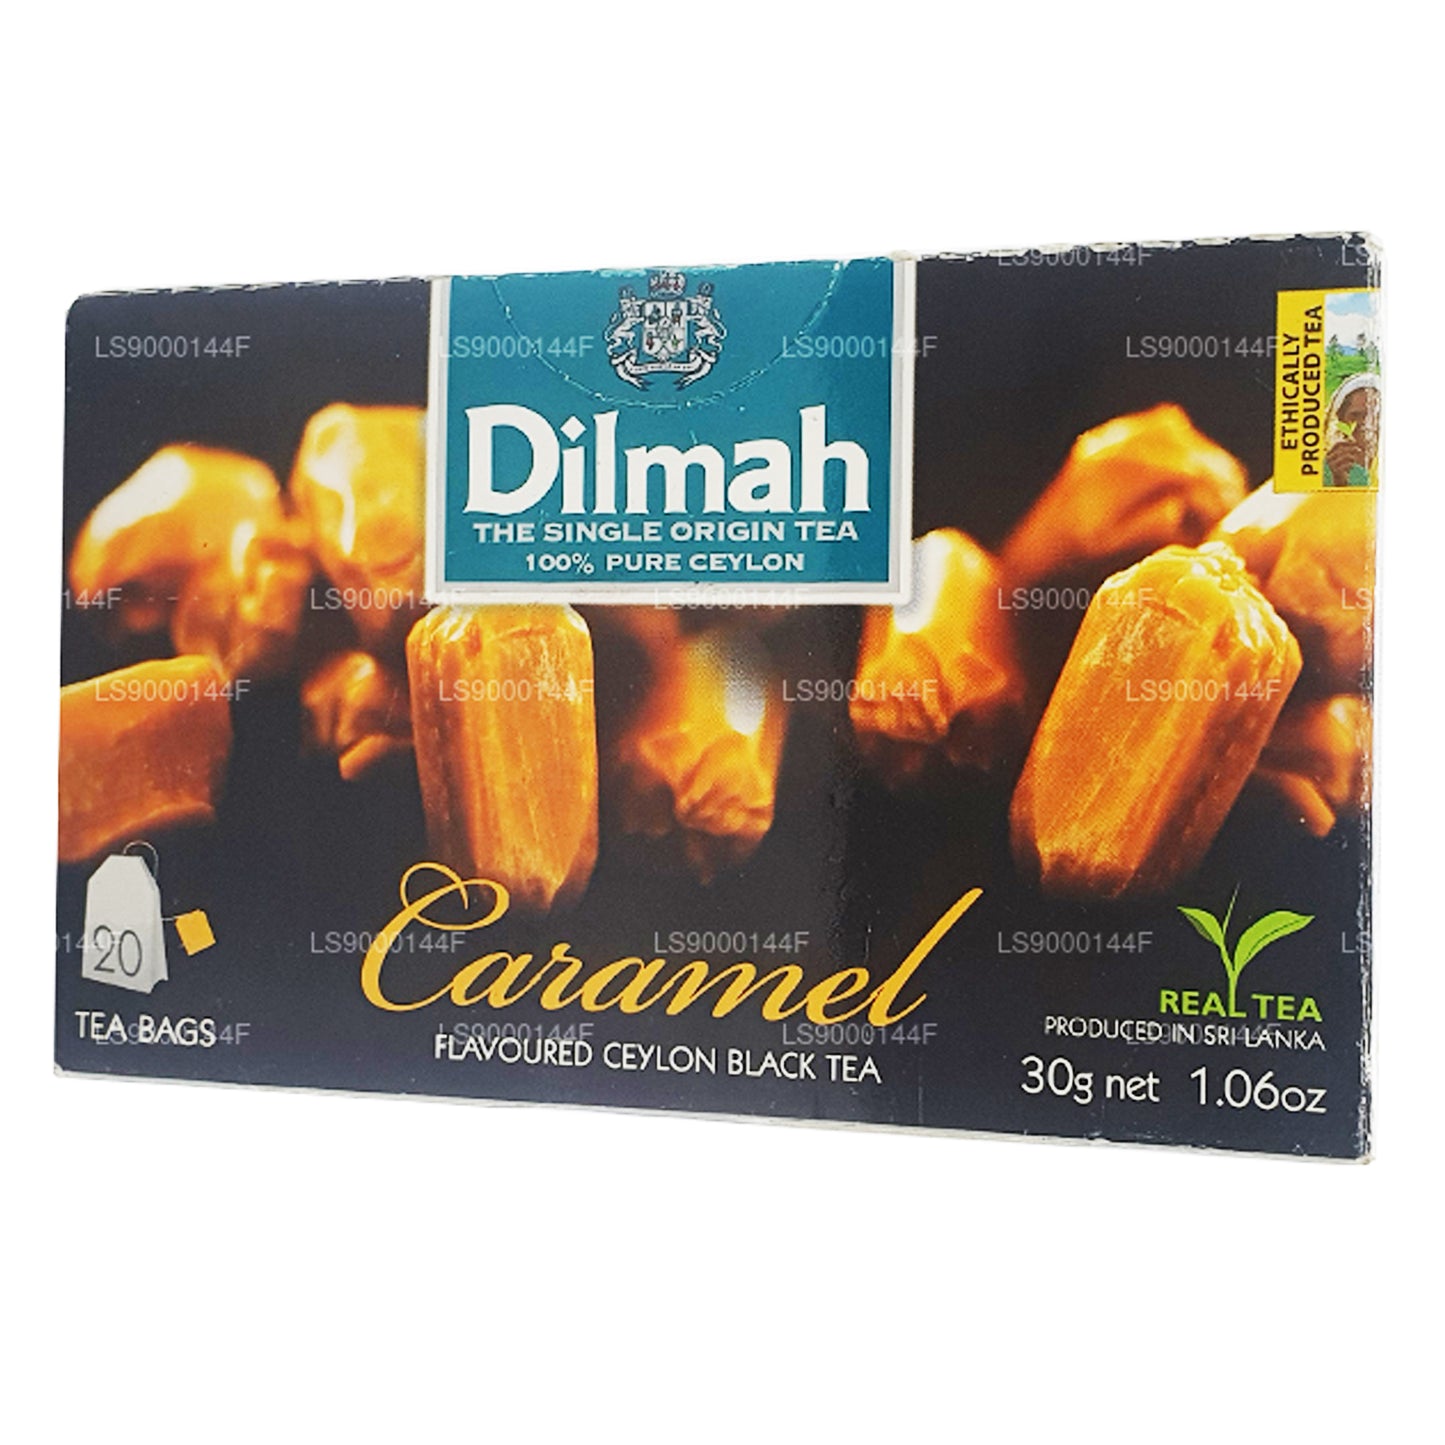 Dilmah Schwarztee mit Karamalgeschmack (20 Teebeutel)